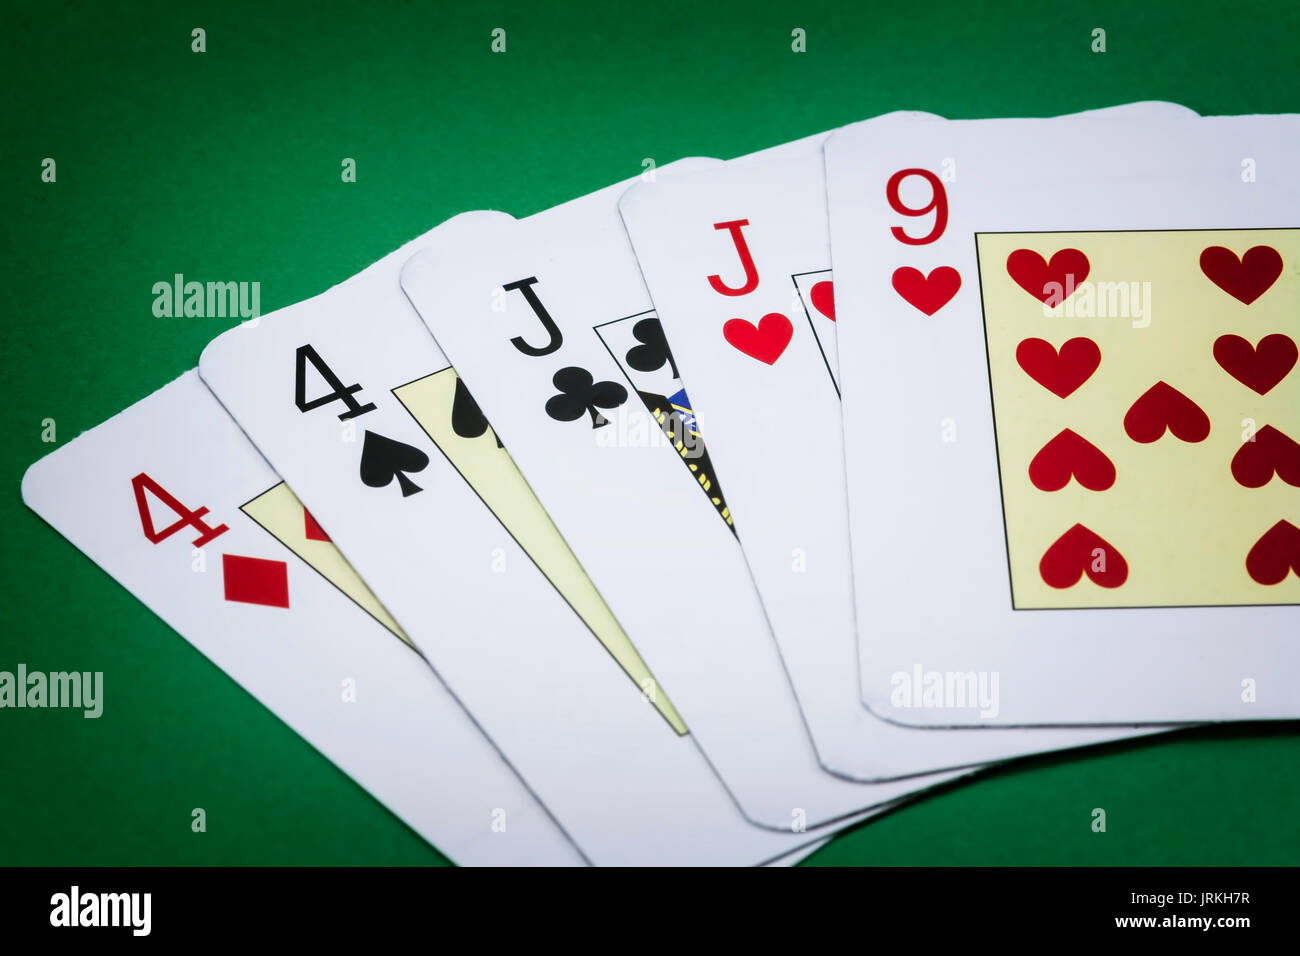 Juegos de cartas con Pares Perfectos